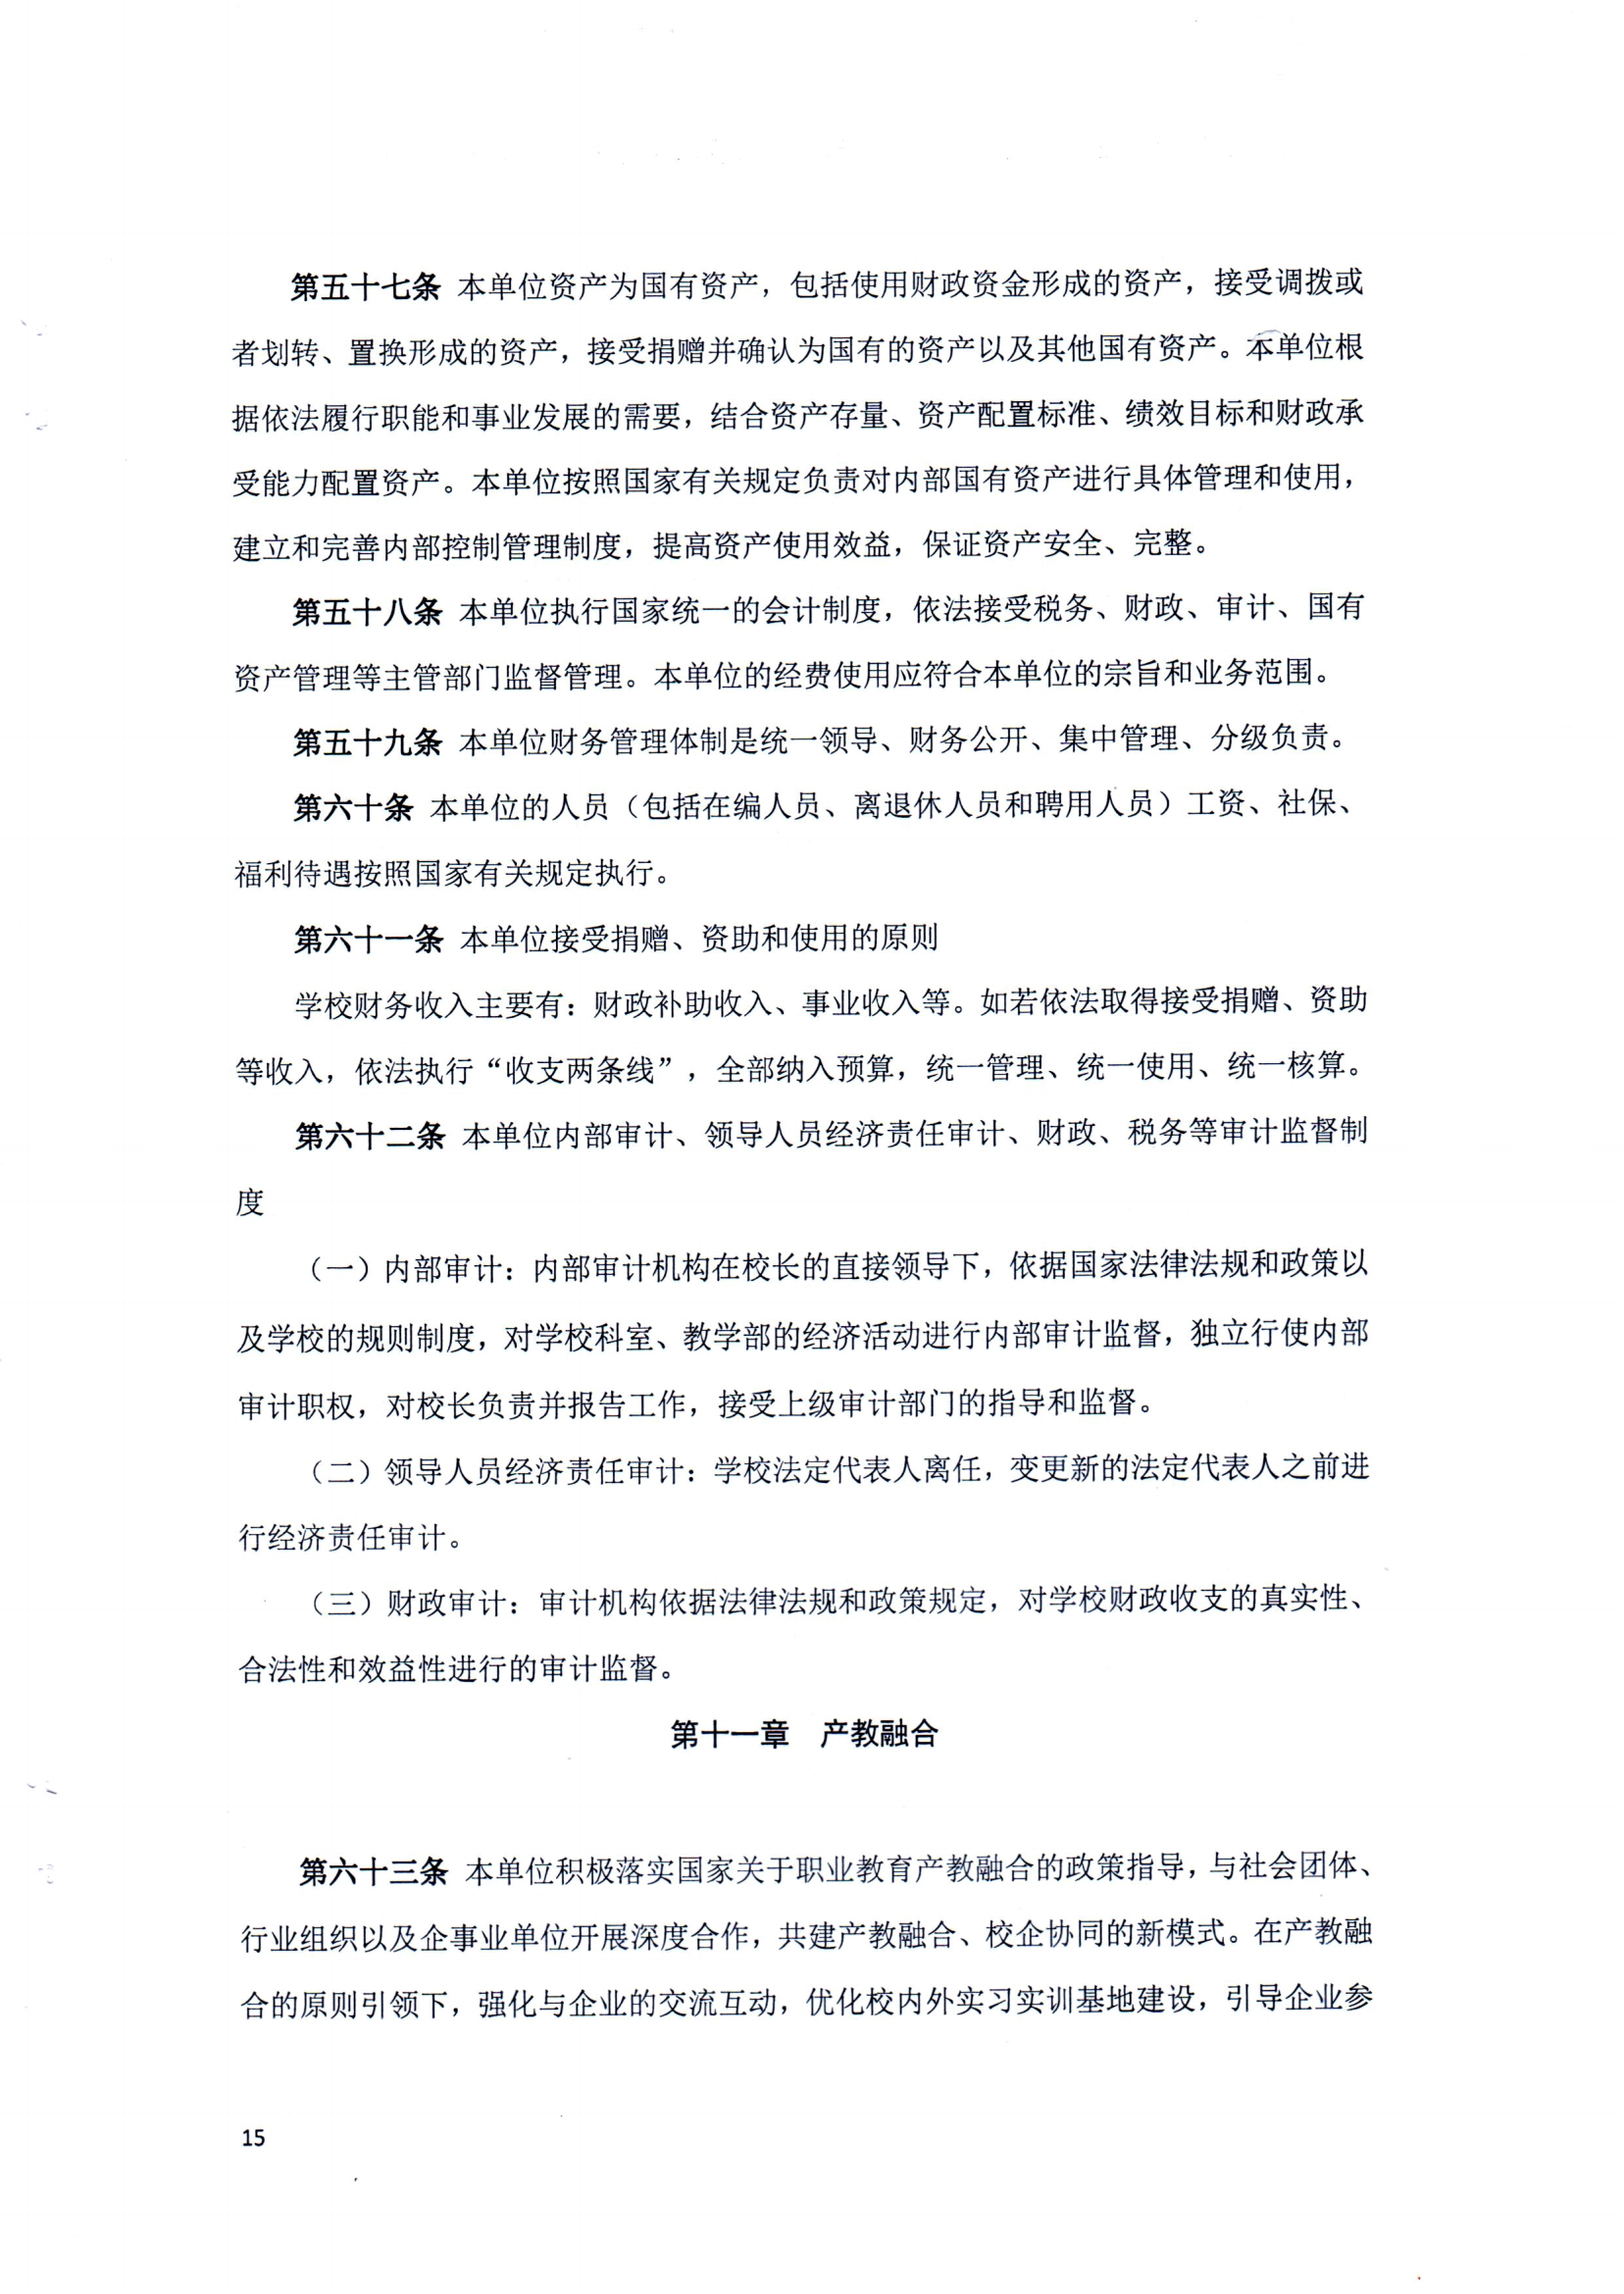 （中国）有限公司官网章程（修正案）_14.png